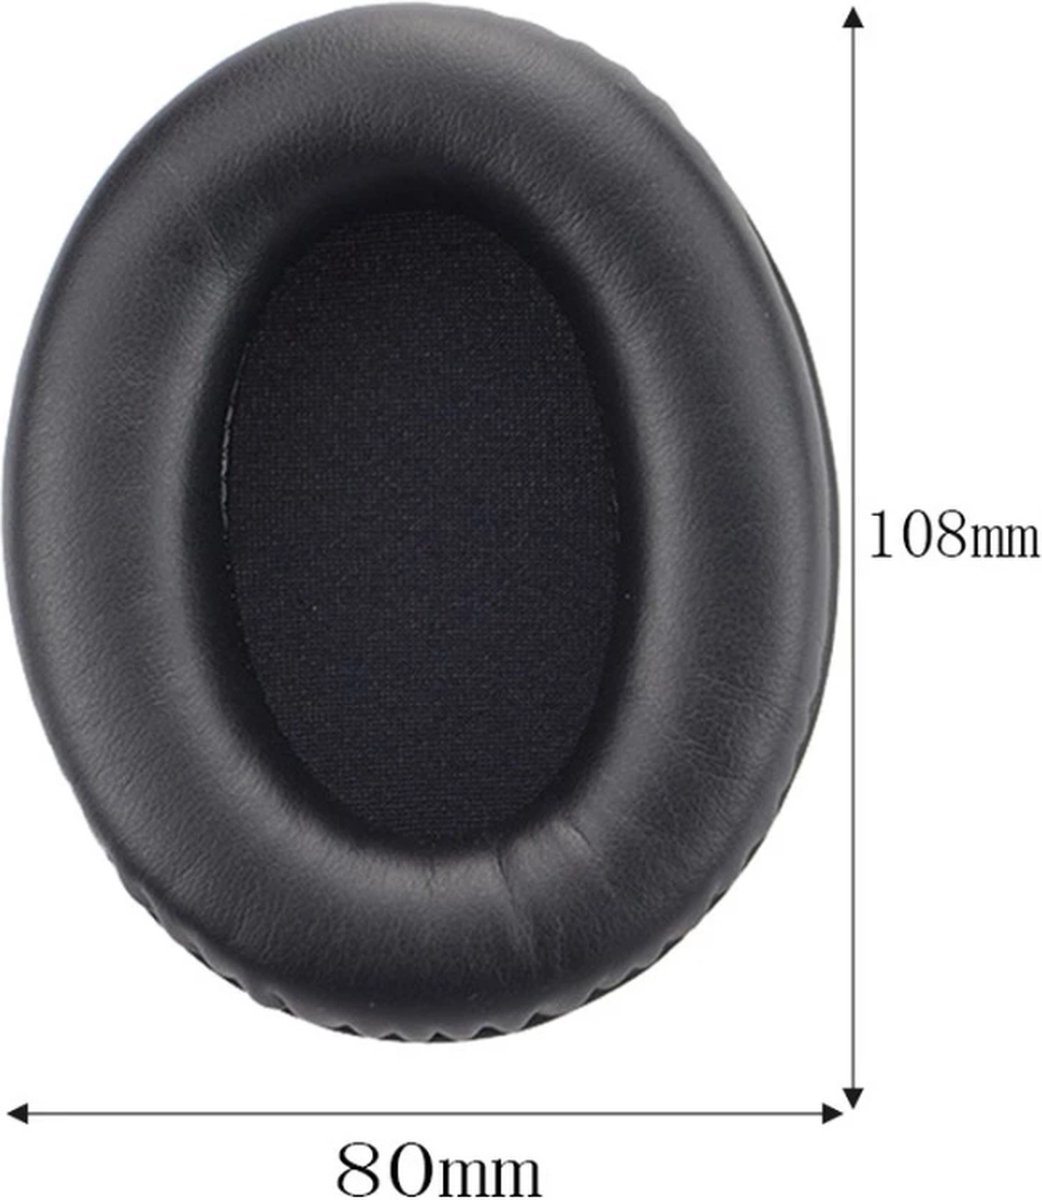 BukkitBow - Oorkussen Set voor Sony koptelefoon - Geschikt voor Sony WH-1000XM3 - Vervangkussens / Earpads voor Sony Koptelefoon - Zwart